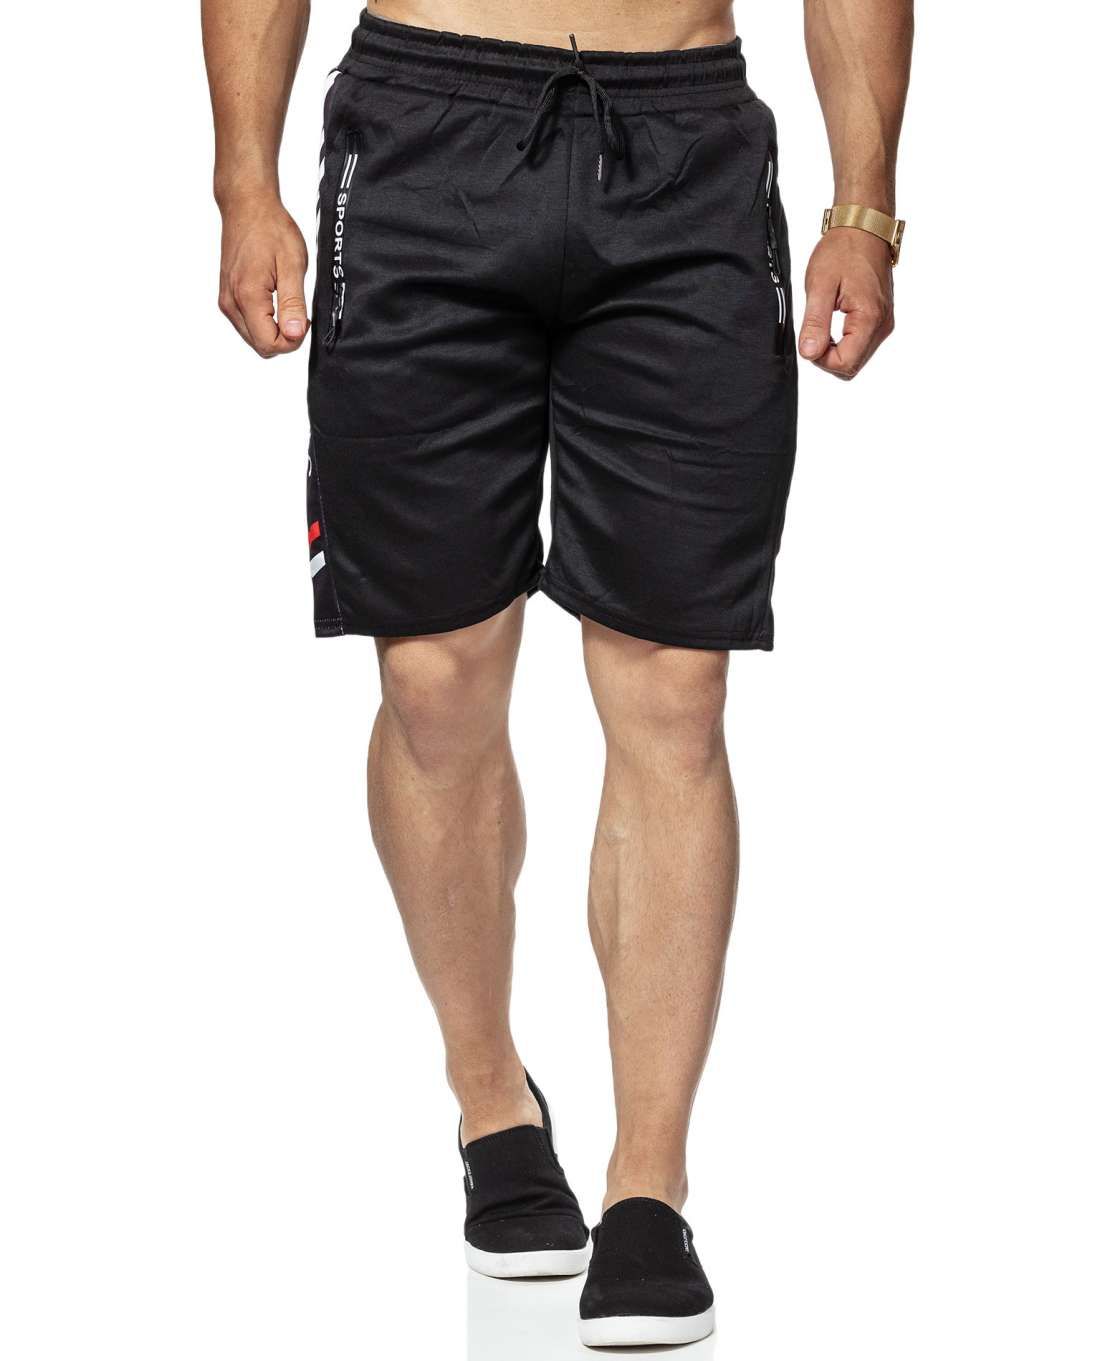 Palary Shorts Black Jerone - 2818 - Shorts - Jerone